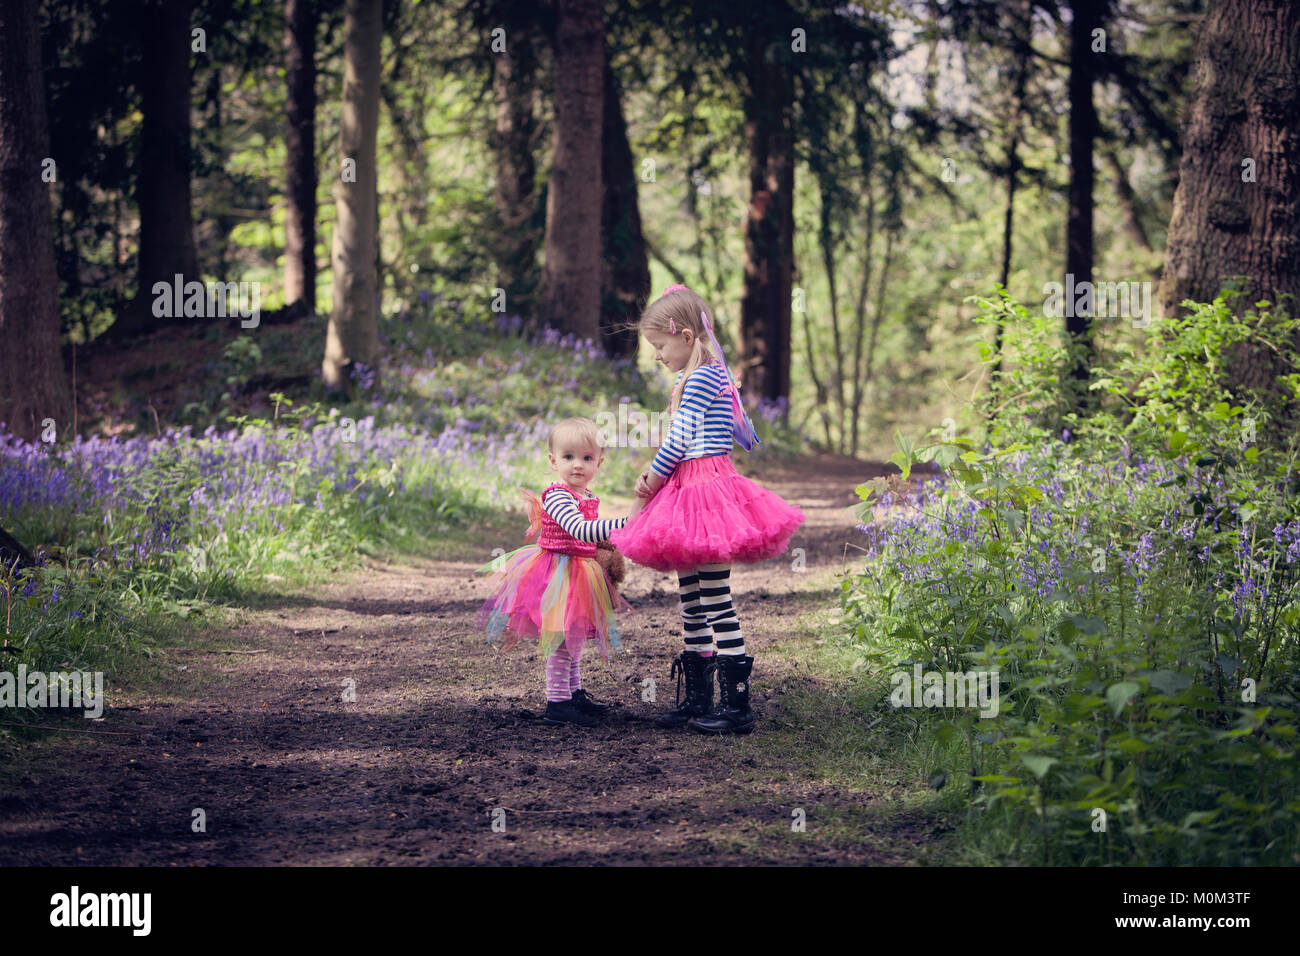 Deux enfants en robes colorées, sur un chemin forestiers Banque D'Images